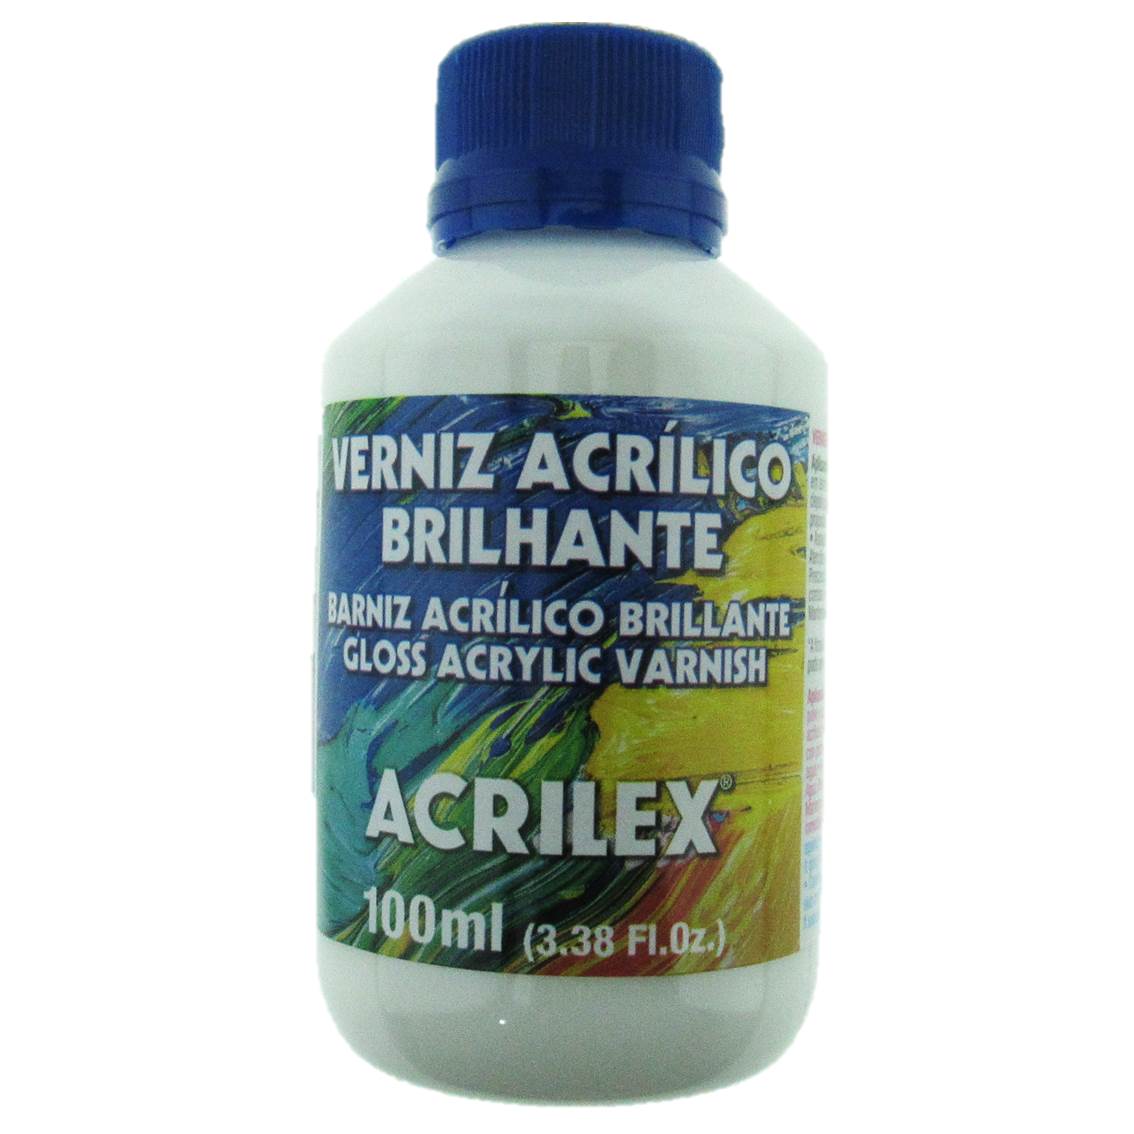 Barniz Acrílico Brillante de Acrilex Frasco 100 ml, Torrico